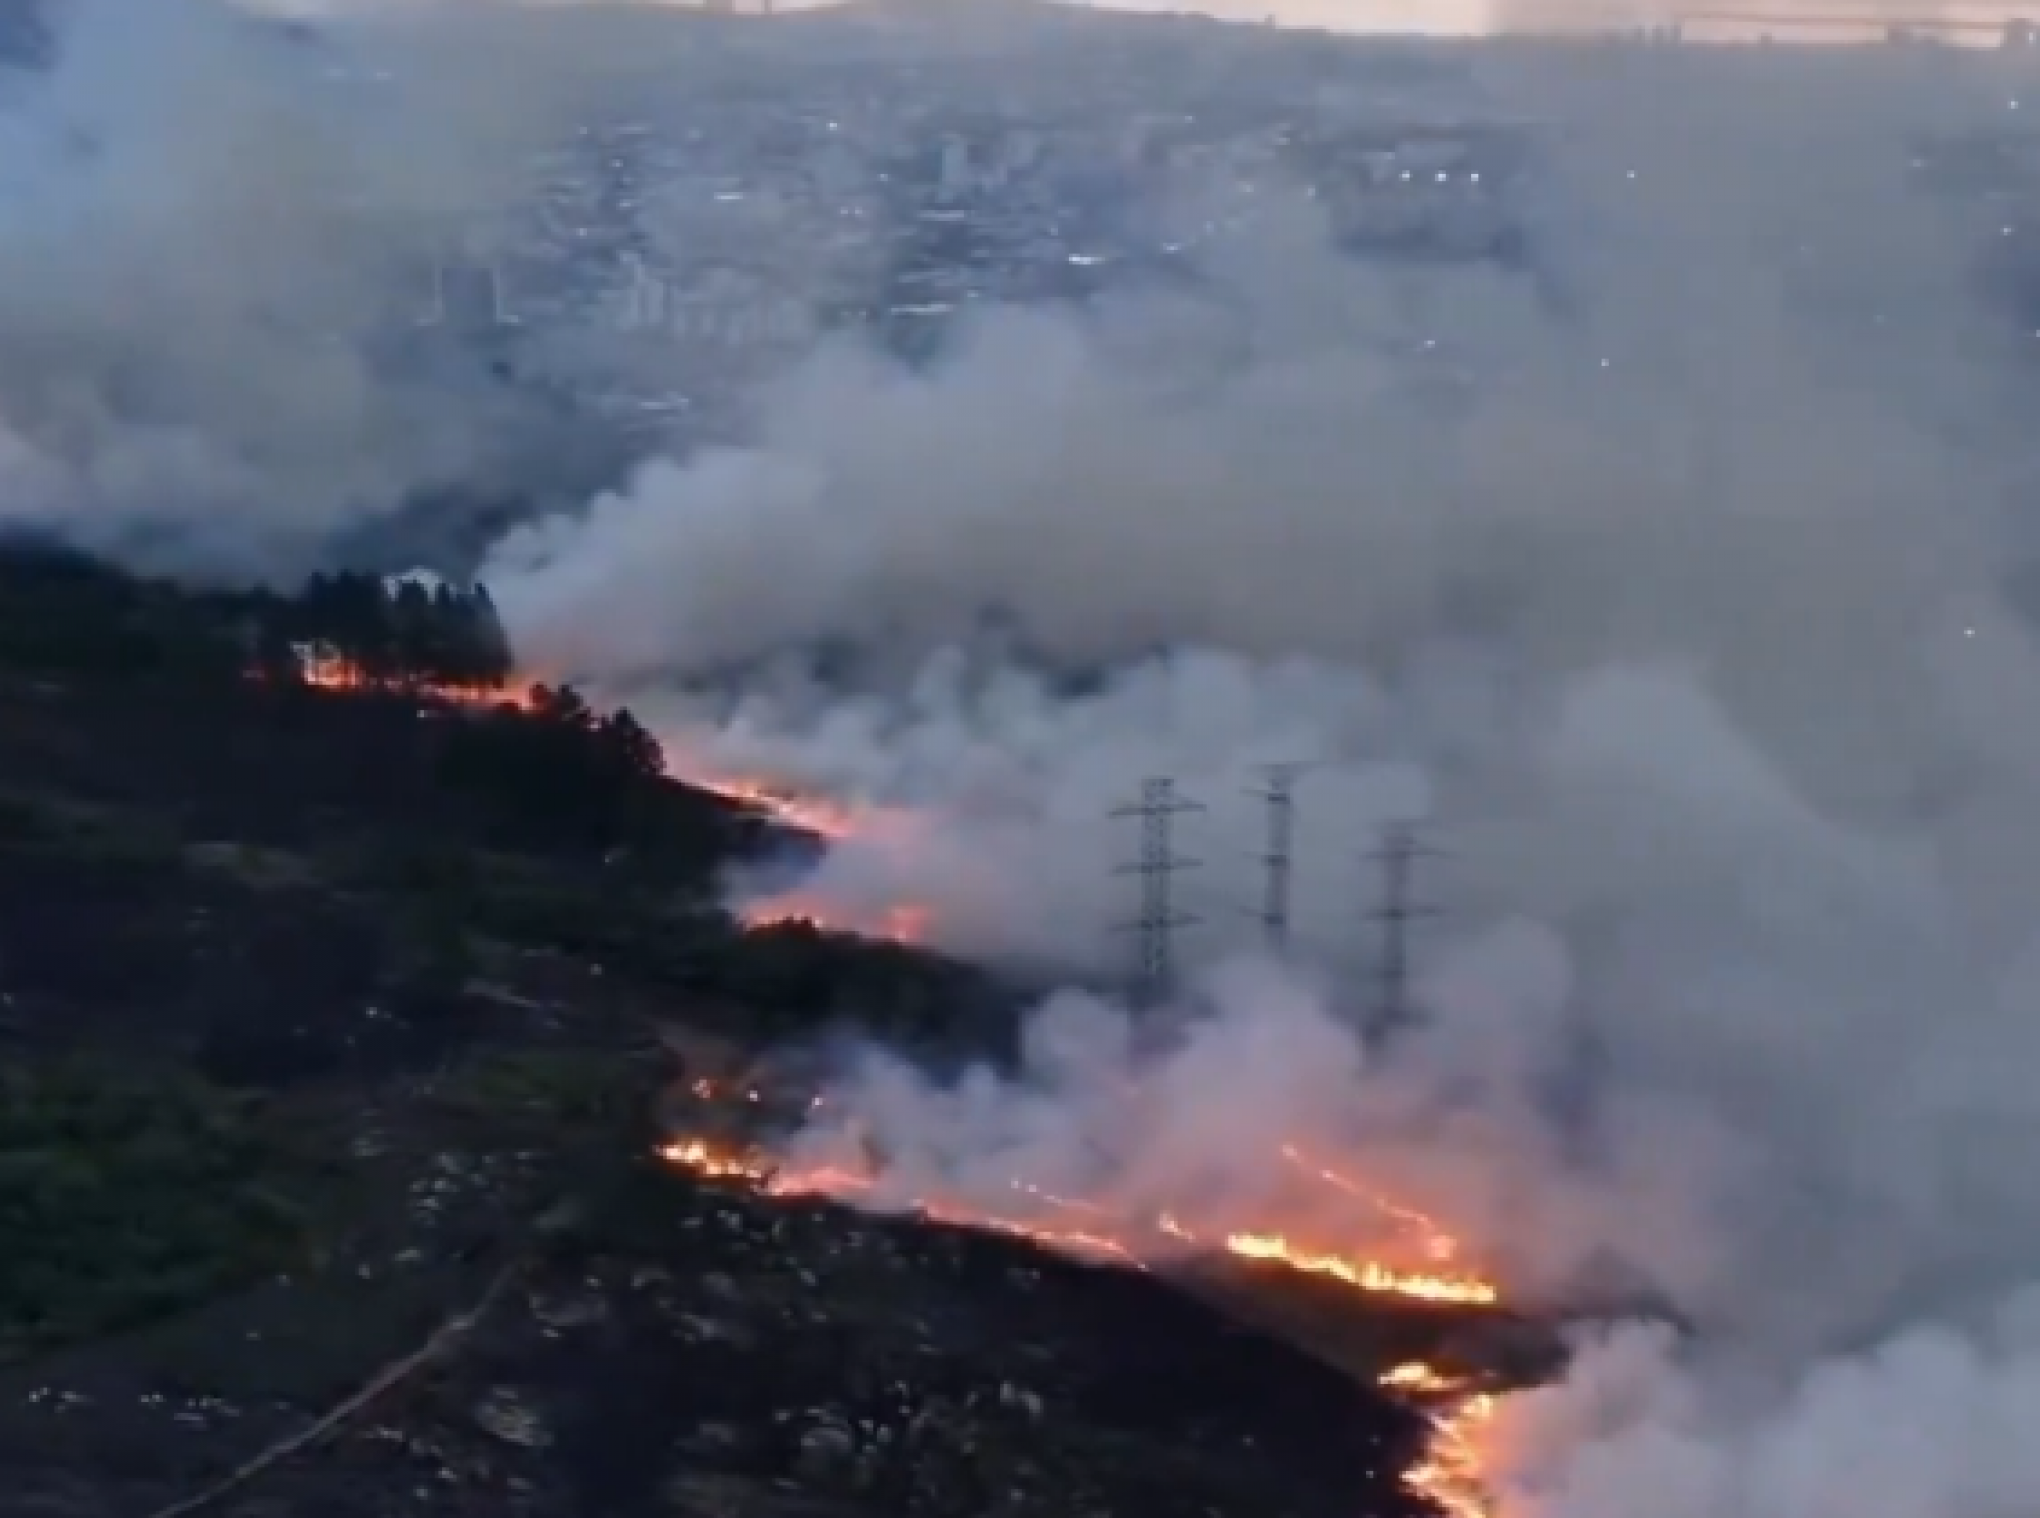 Quase 7 horas após início de incêndio, Bombeiros controlam chamas em área de vegetação em Porto Alegre